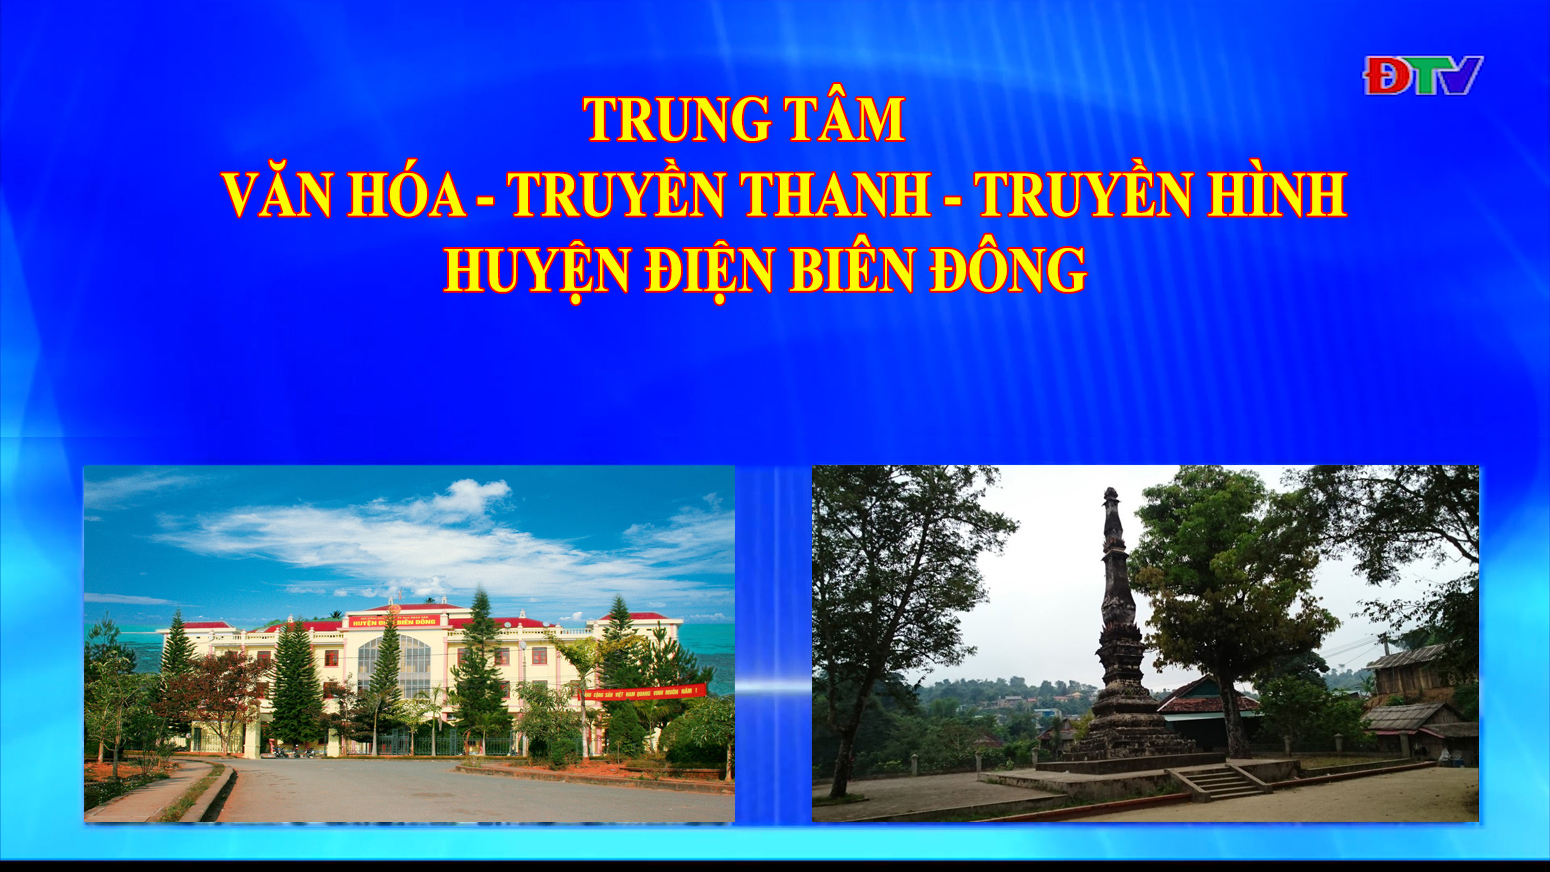 Trung tâm VH-TTTH huyện Điện Biên Đông (Ngày 4-12-2021)